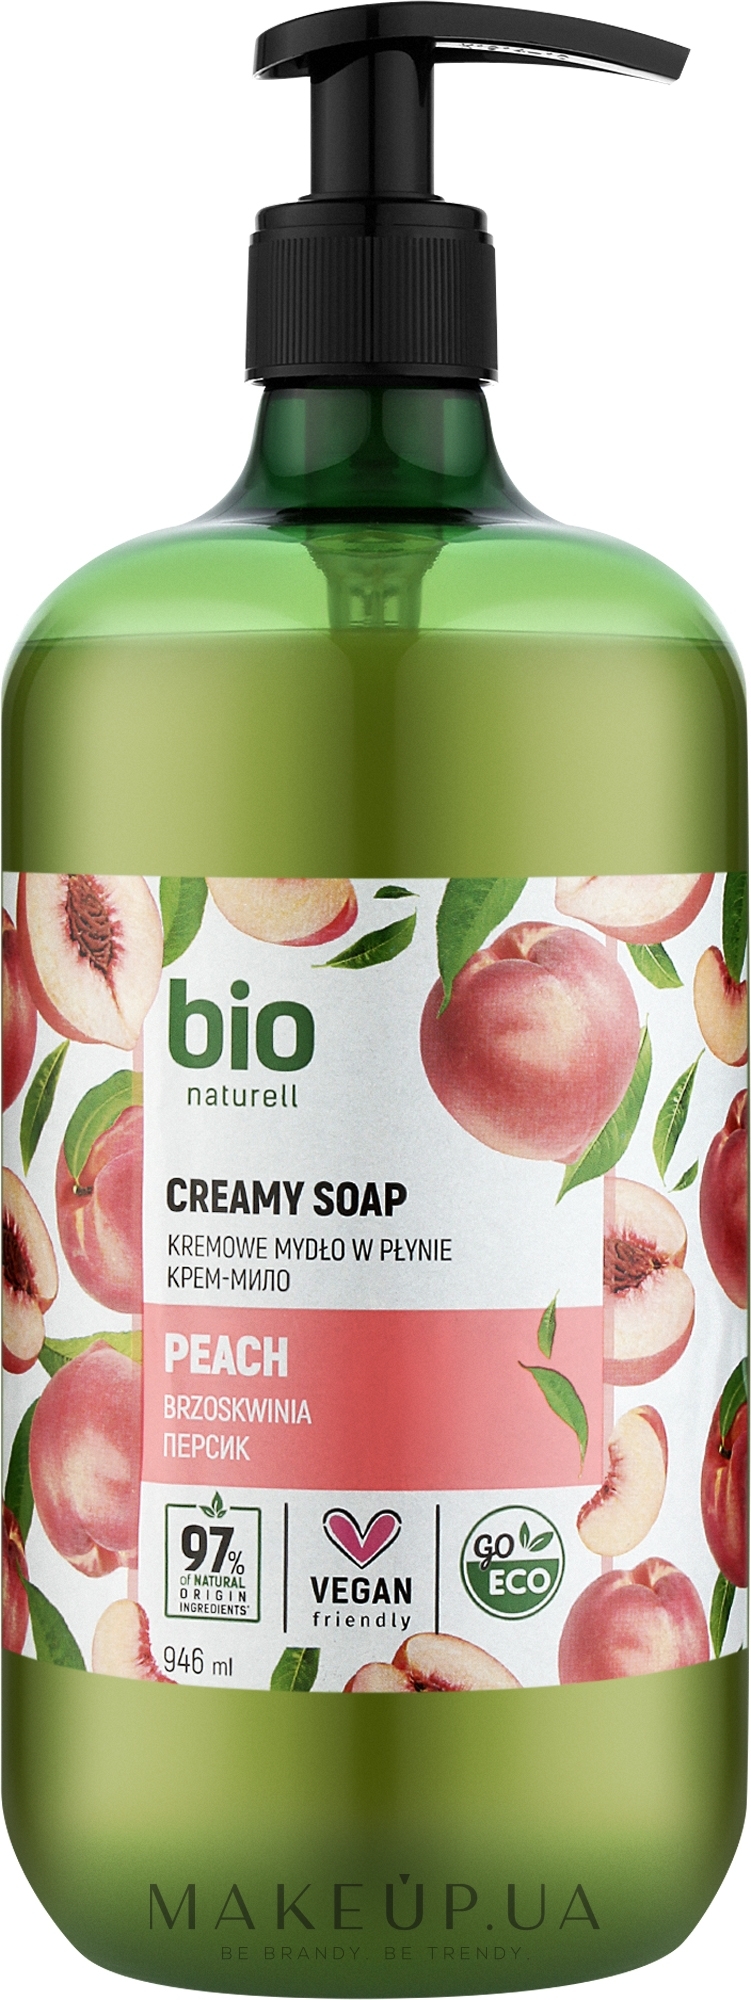 Крем-мыло "Персик" с дозатором - Bio Naturell Peach Creamy Soap  — фото 946ml